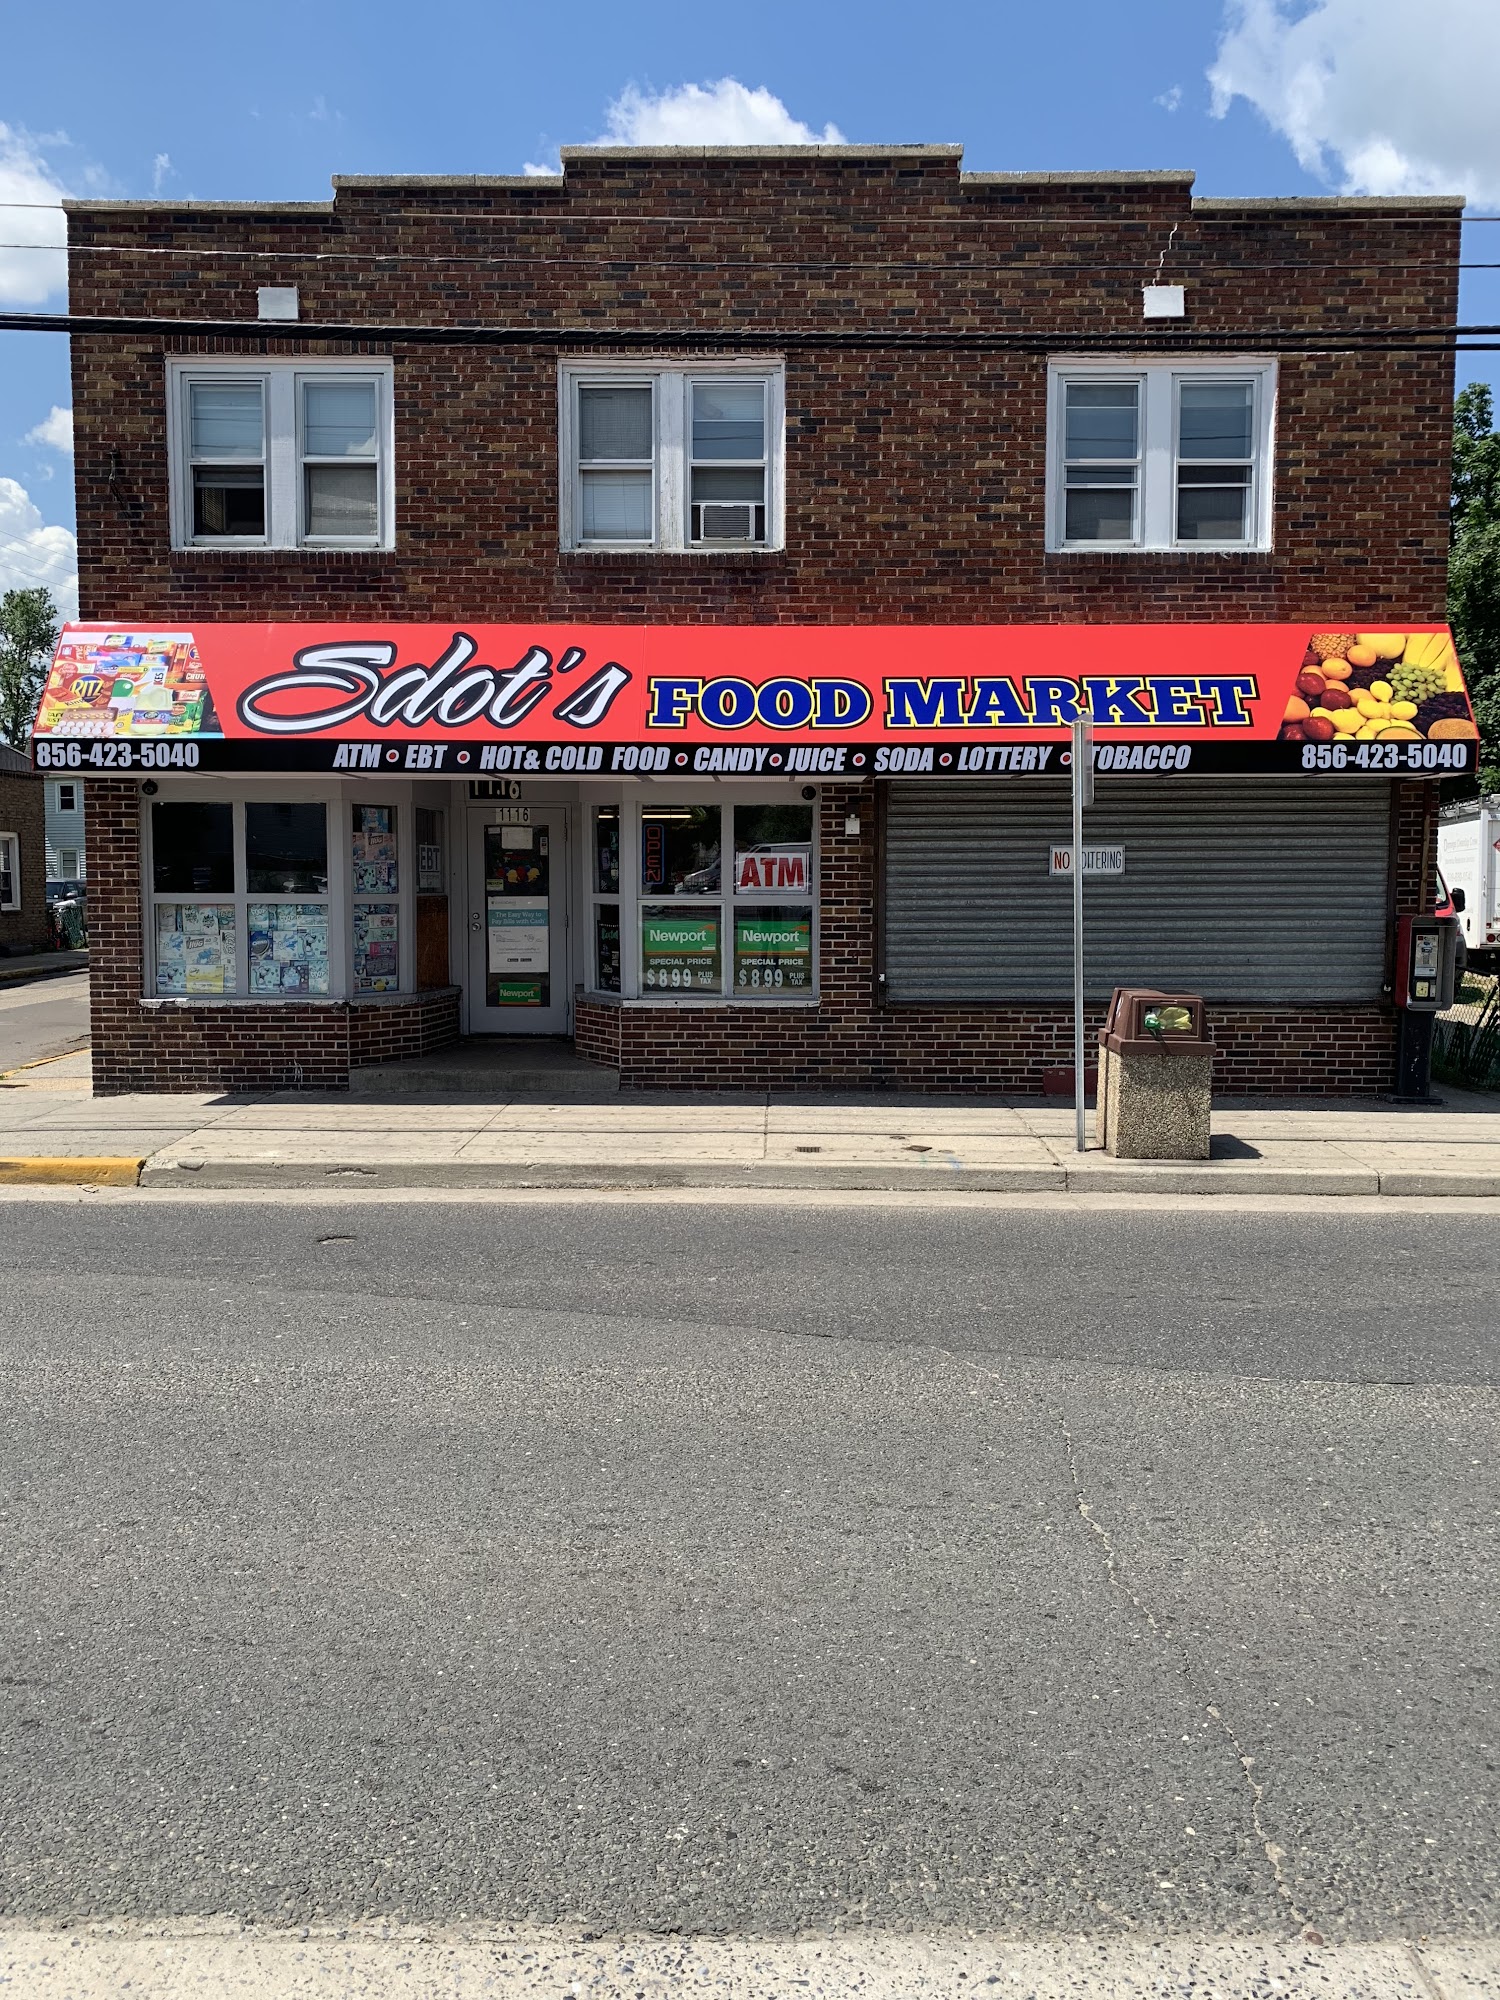 Sdot’s Food Market